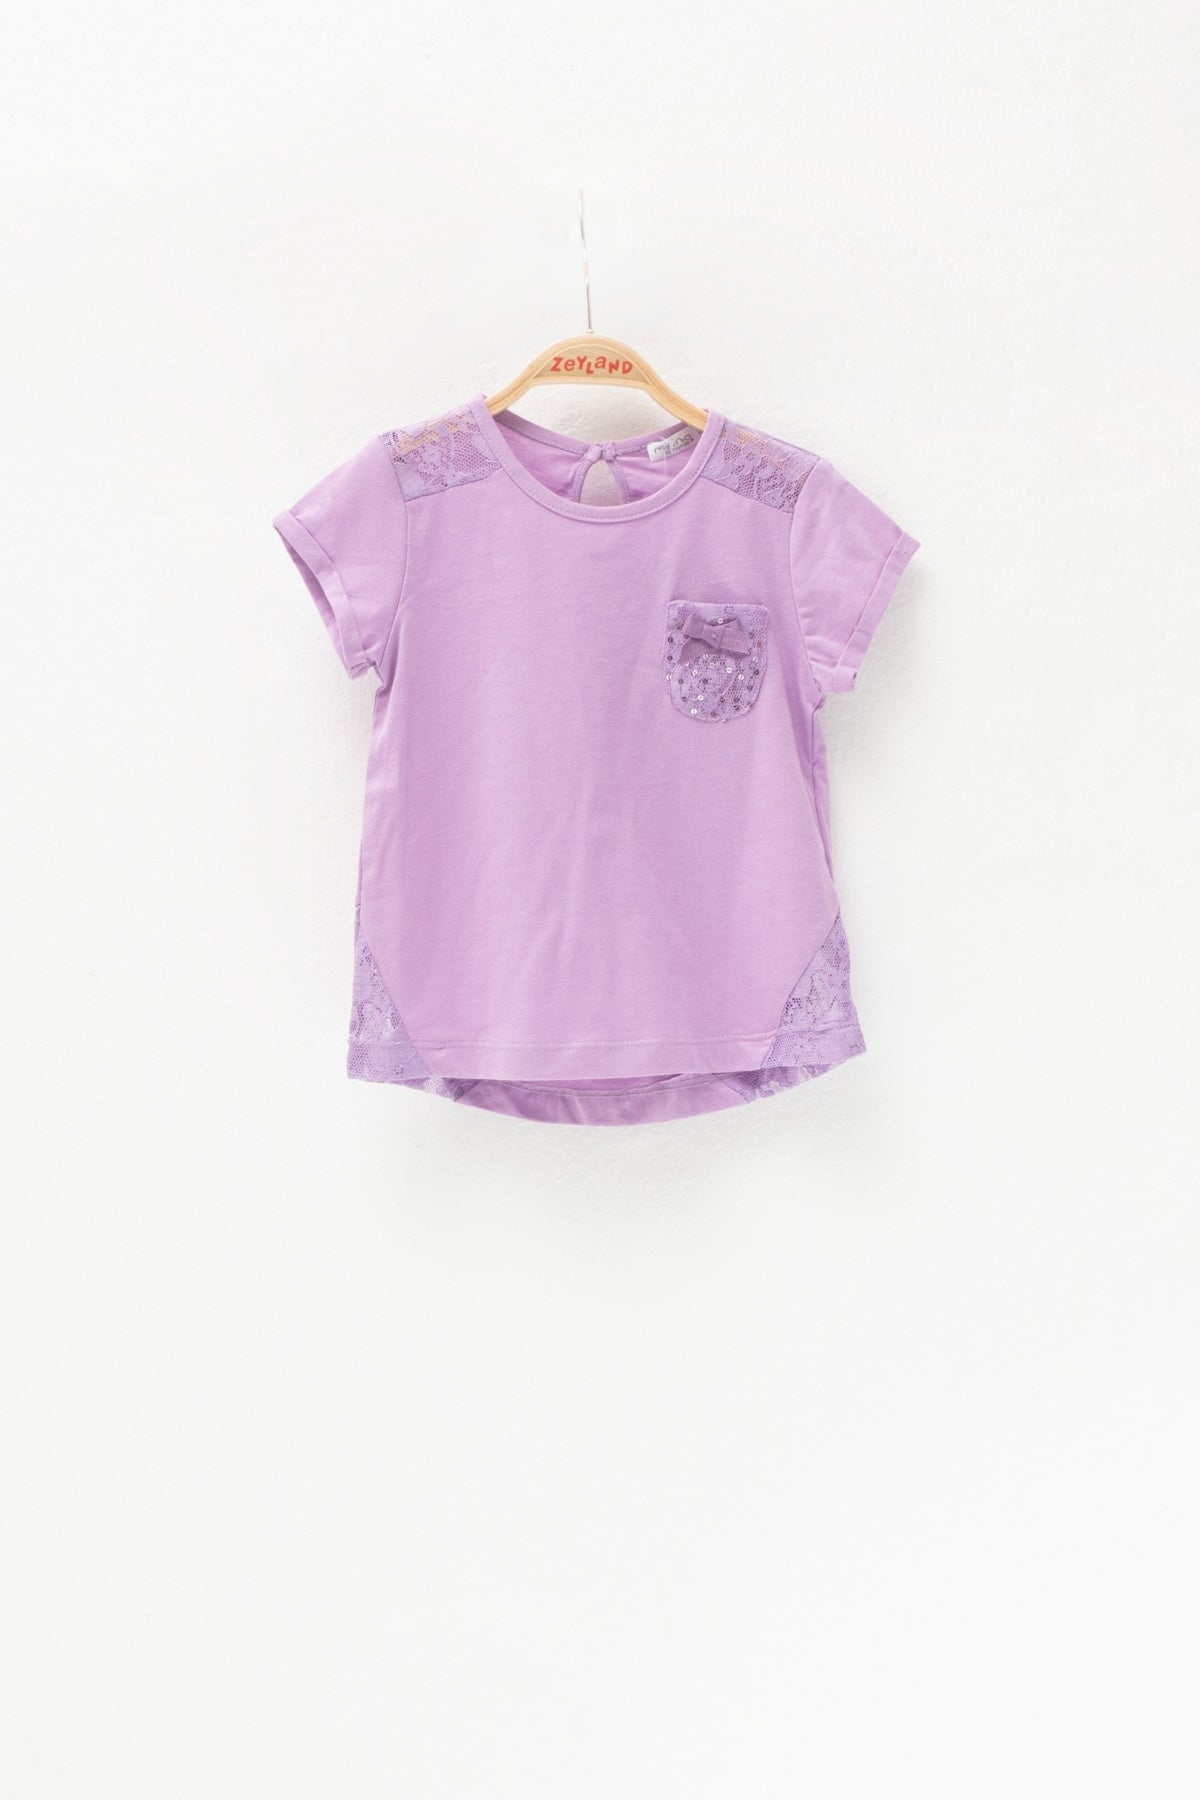 Kız Bebek Lila Dantel Parçalı ve Cepli T-Shirt (6ay-4yaş)-0